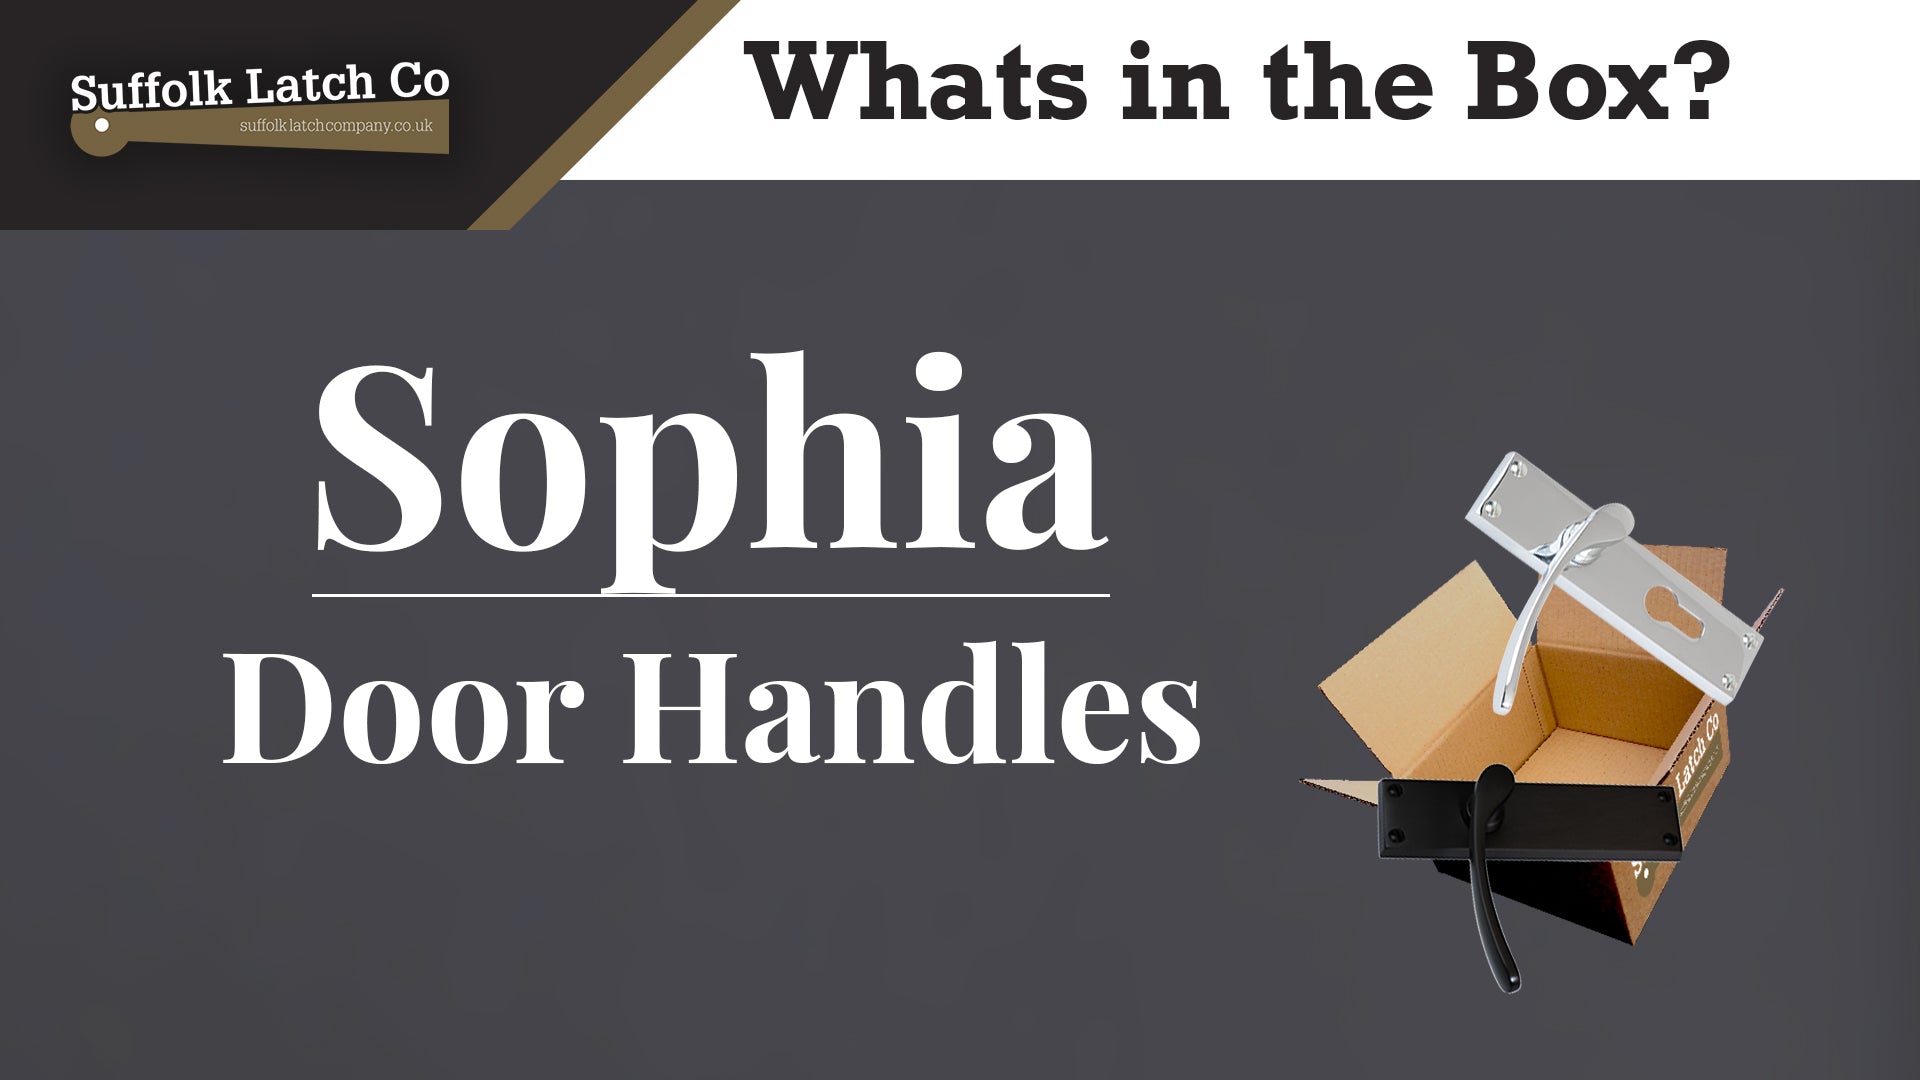 What's in the box: Sophia Door Handles